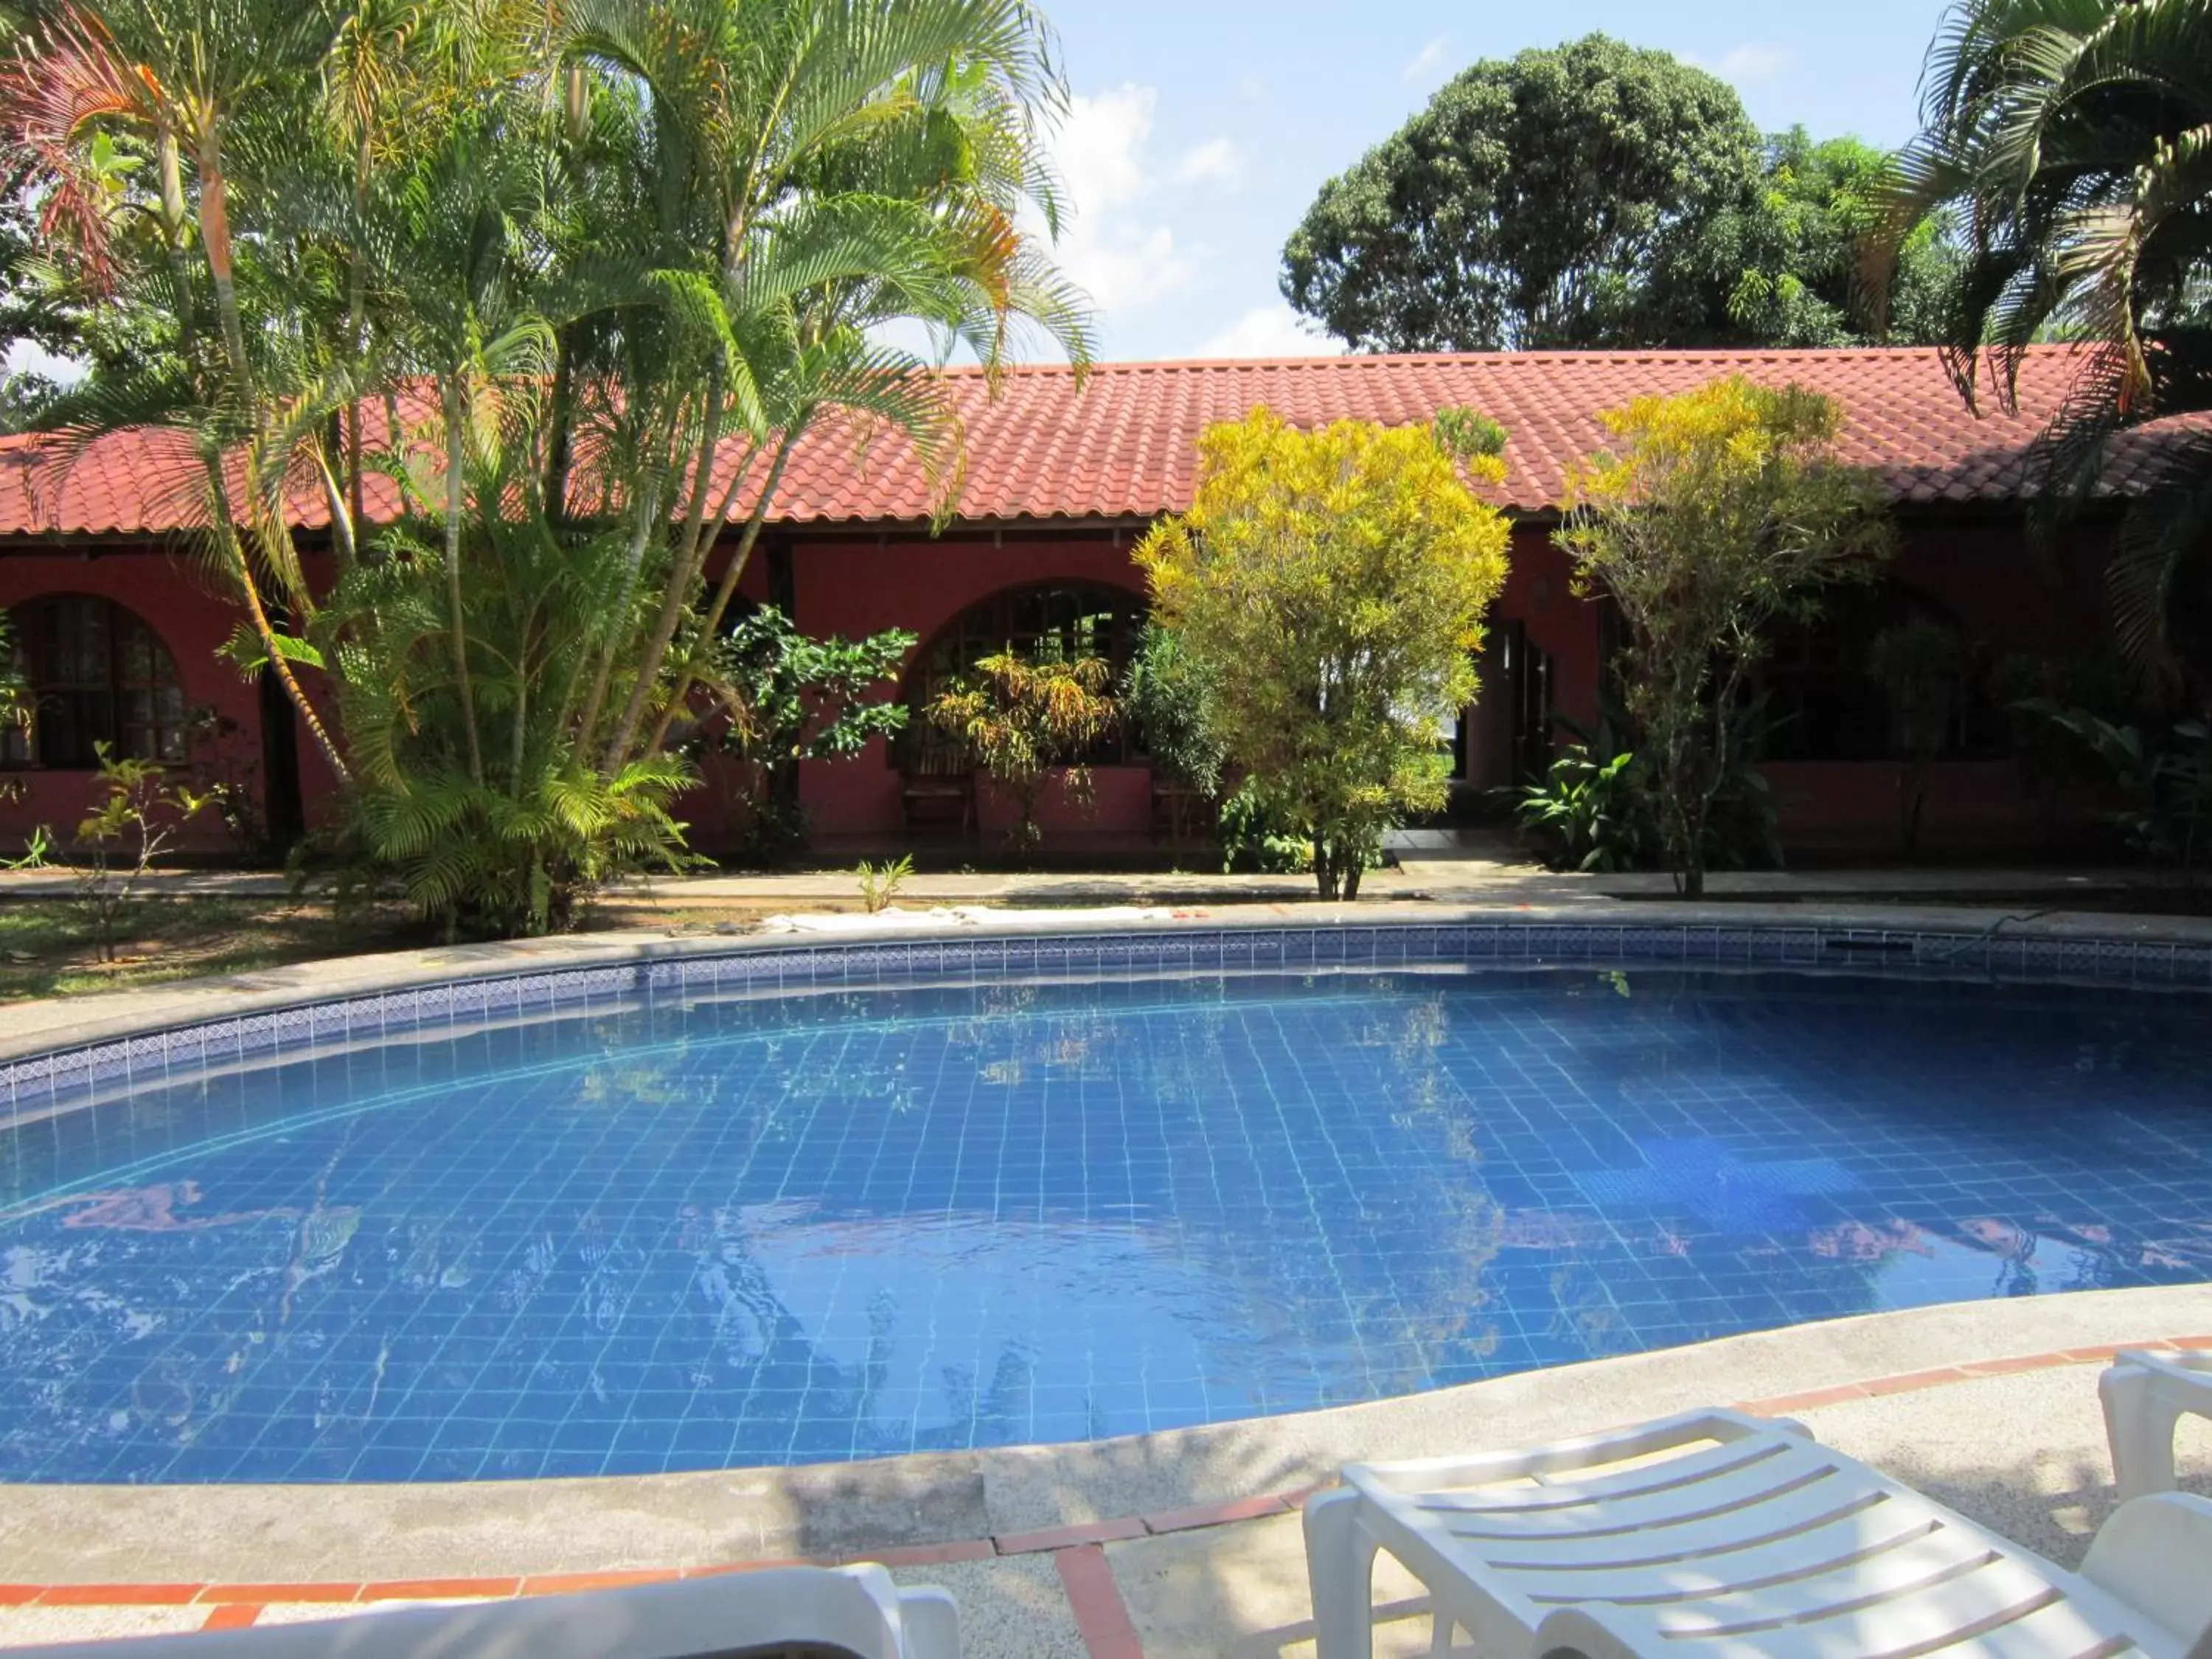 Property building, Swimming Pool in Hotel El Paraiso Escondido - Costa Rica